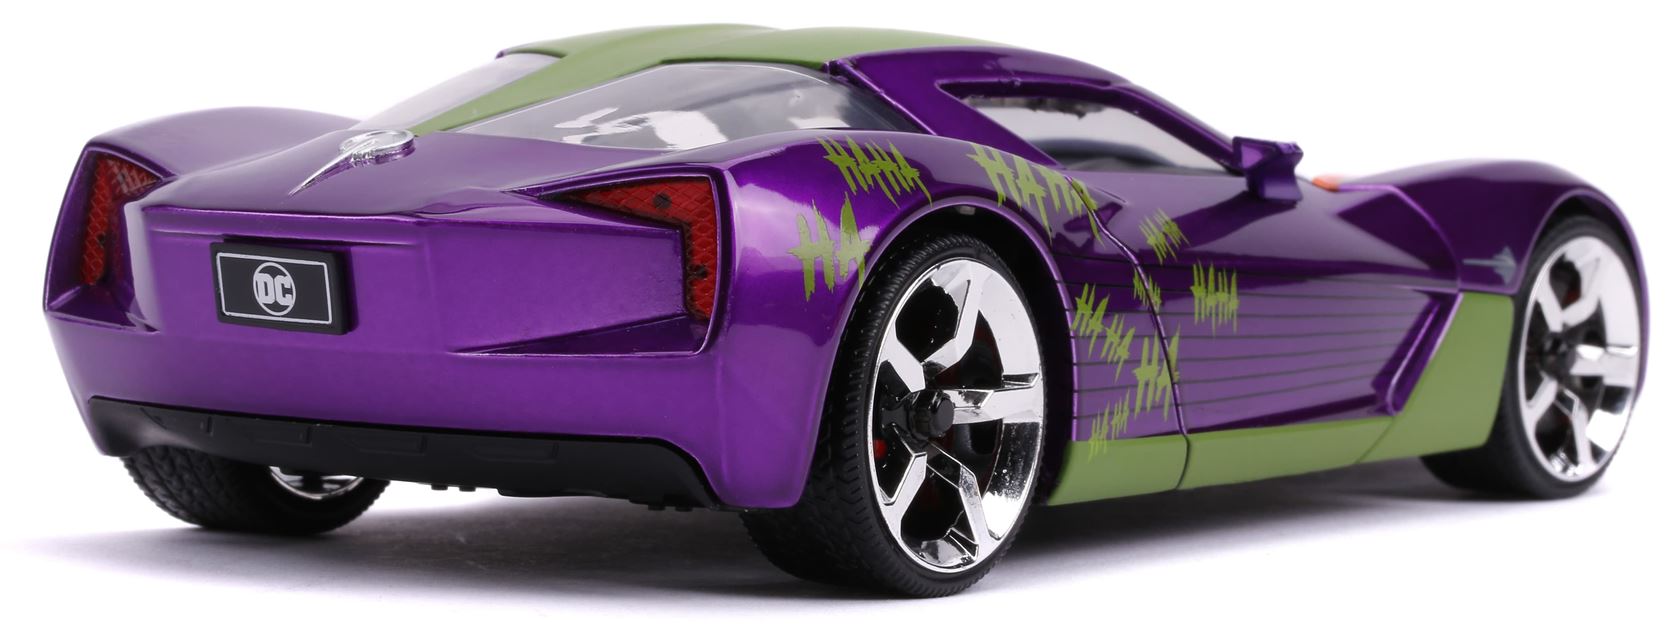 Joker-2009-Chevy-Corvette-Stingray-1-24